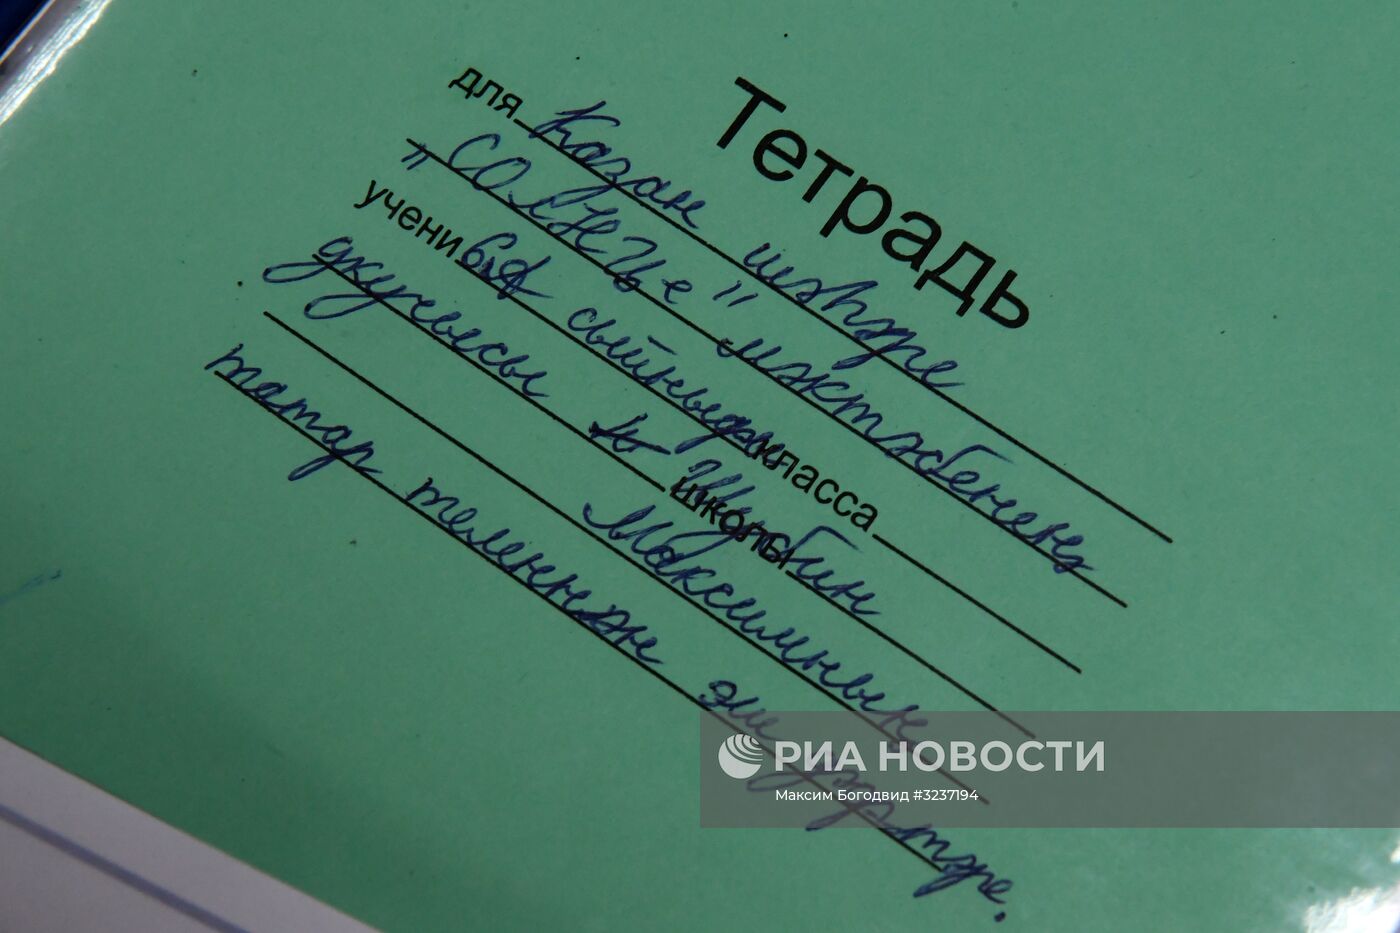 Изучение татарского языка в Казани